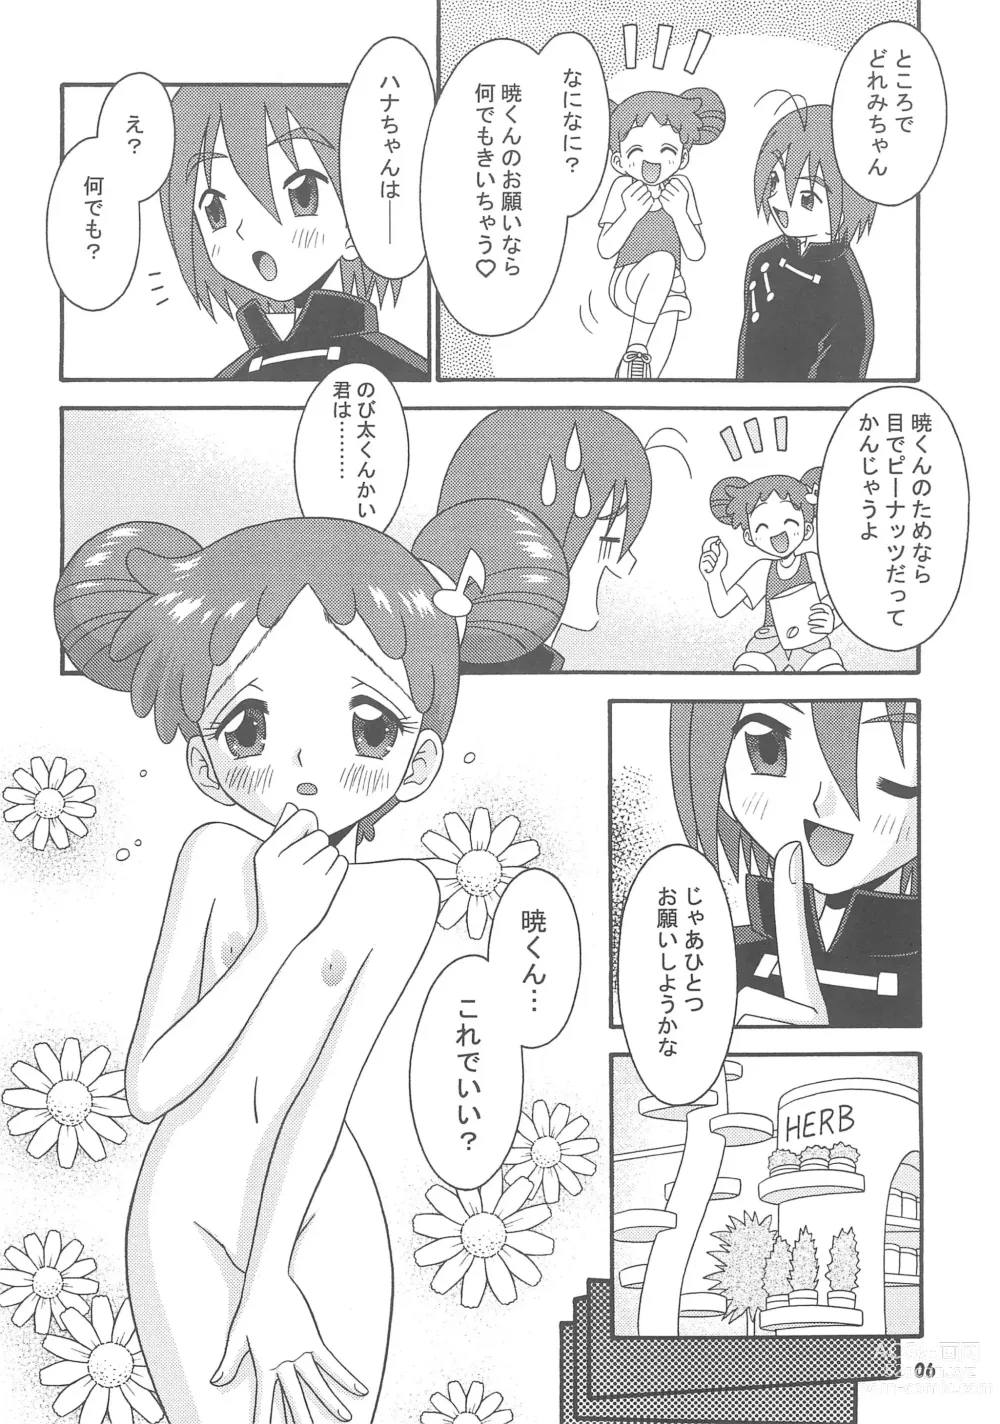 Page 8 of doujinshi Subete no Mirai ni Hikari are 4